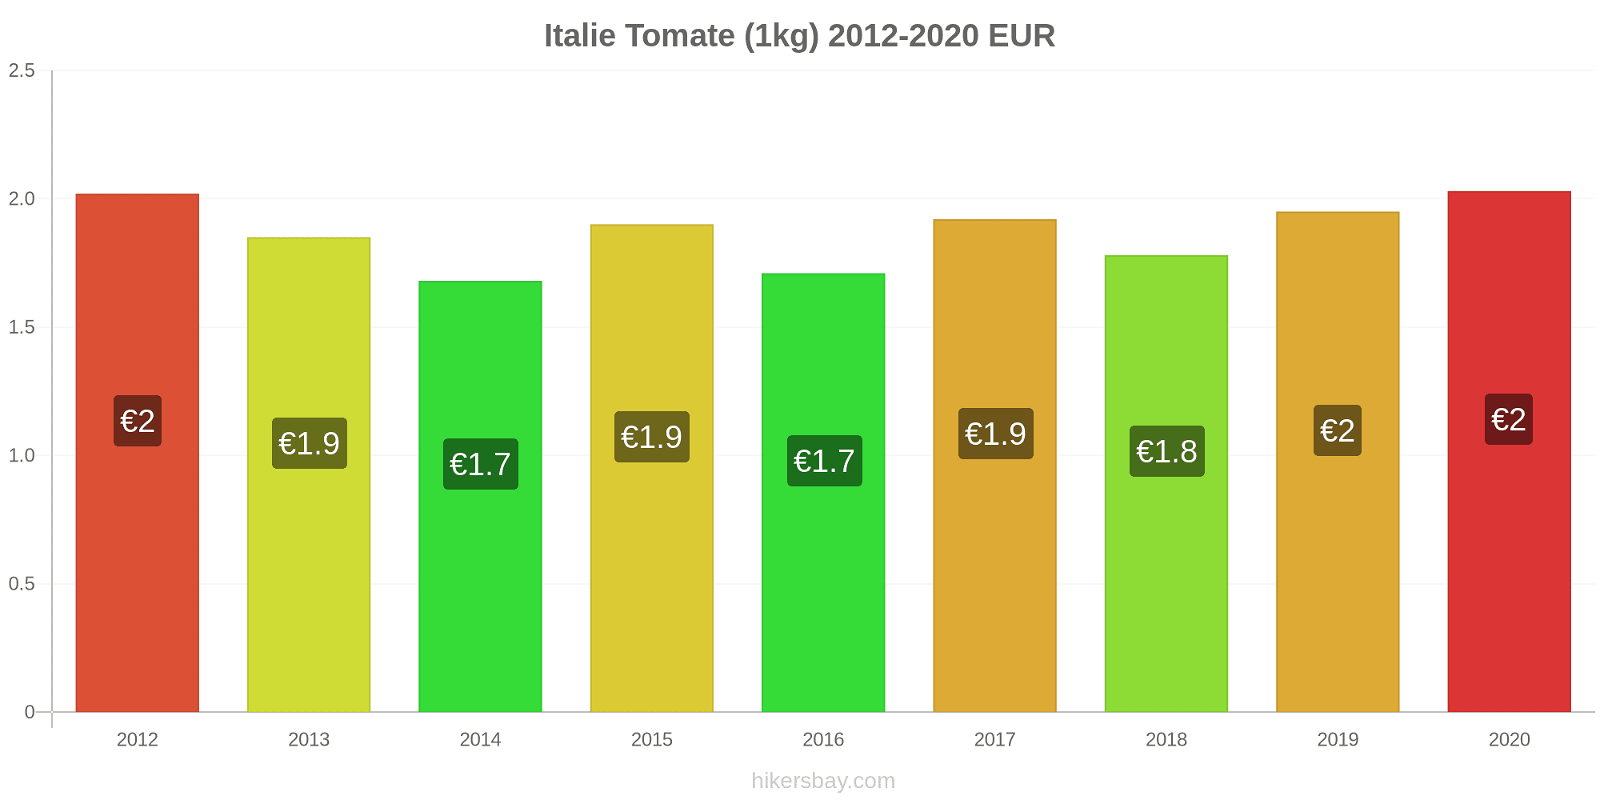 Italie changements de prix Tomate (1kg) hikersbay.com